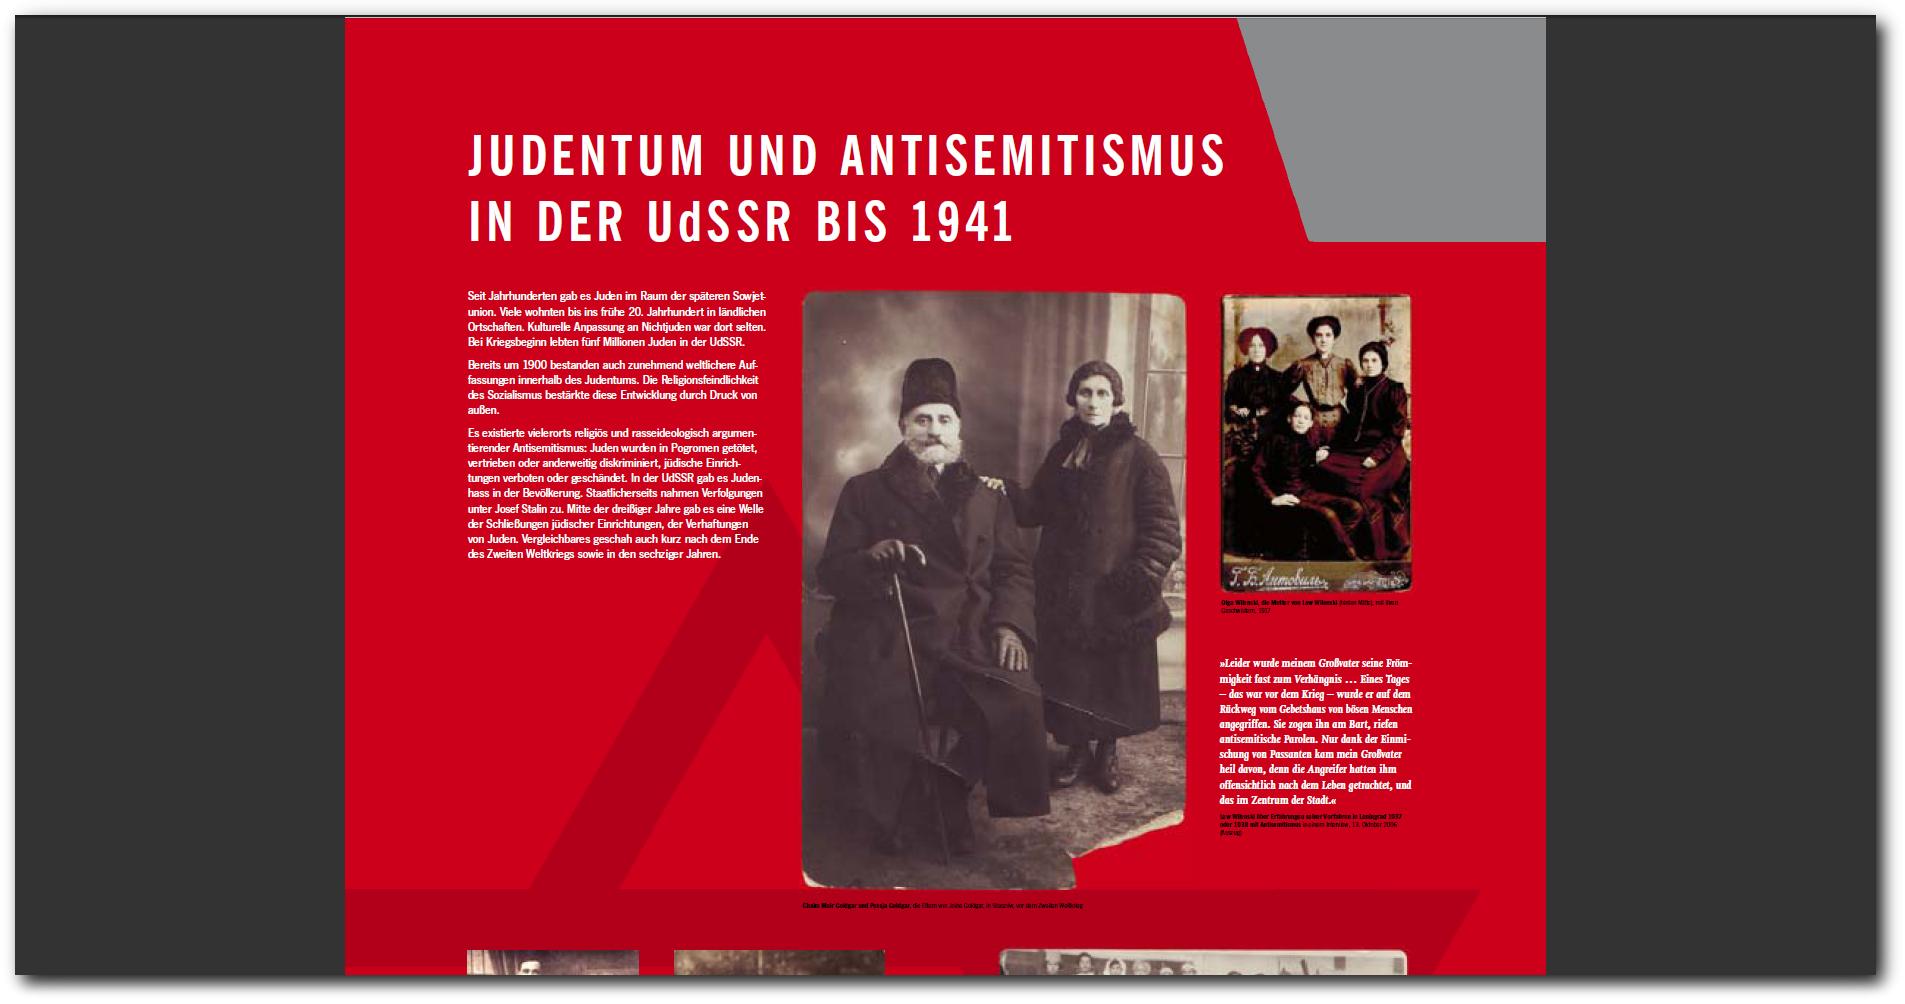 judentum und antisemitismus in der sowjetunion bis 1941